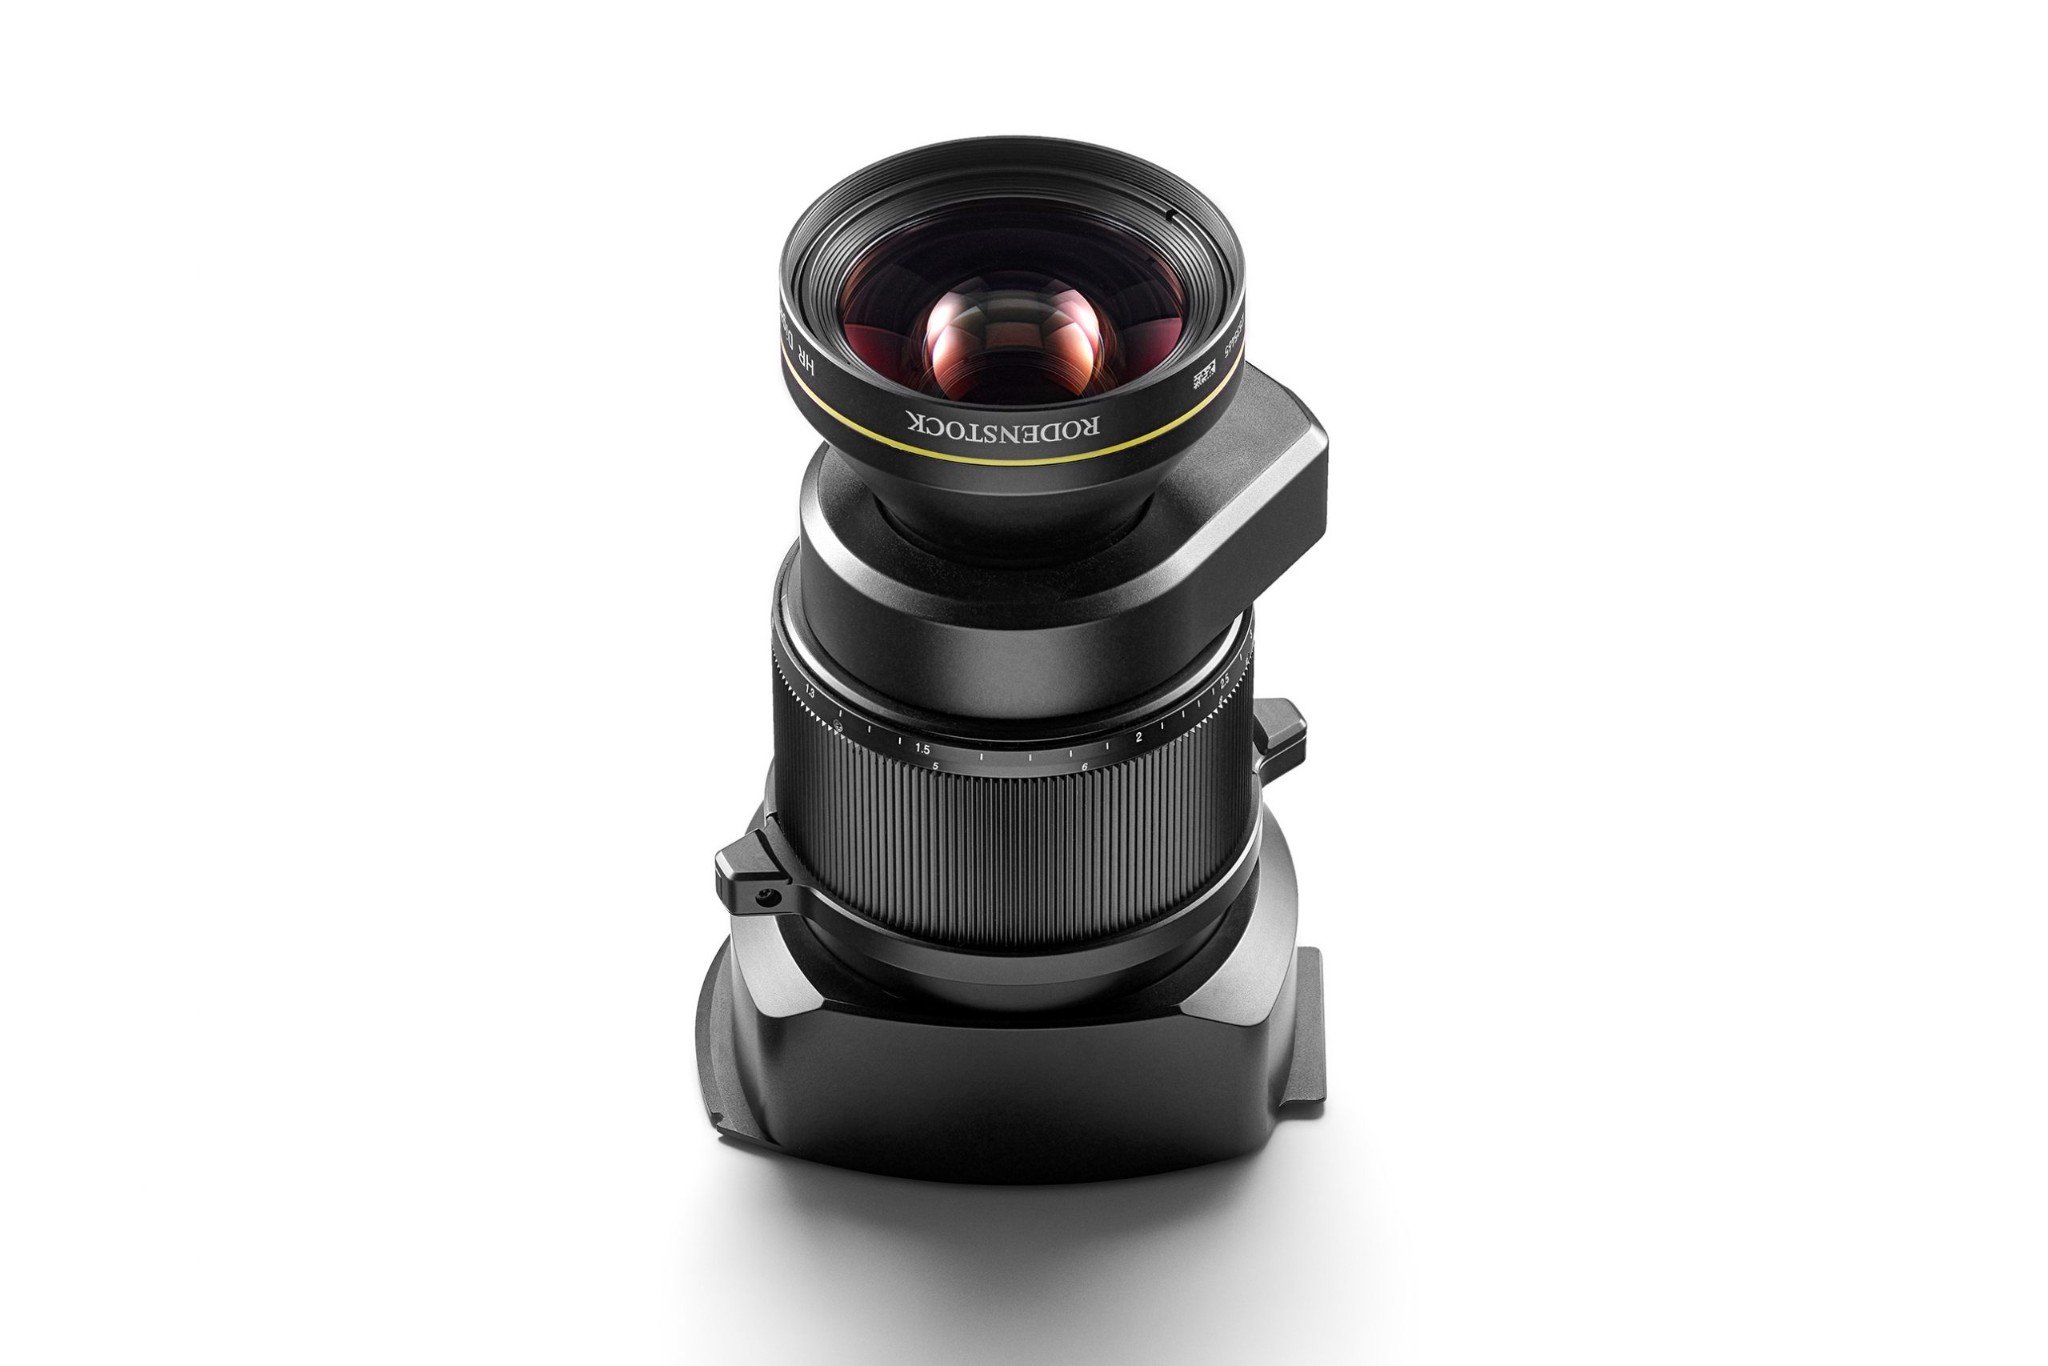 Phase One ra mắt ống kính 90mm F5.6 cho máy ảnh ngàm XT, giá 13,000 USD